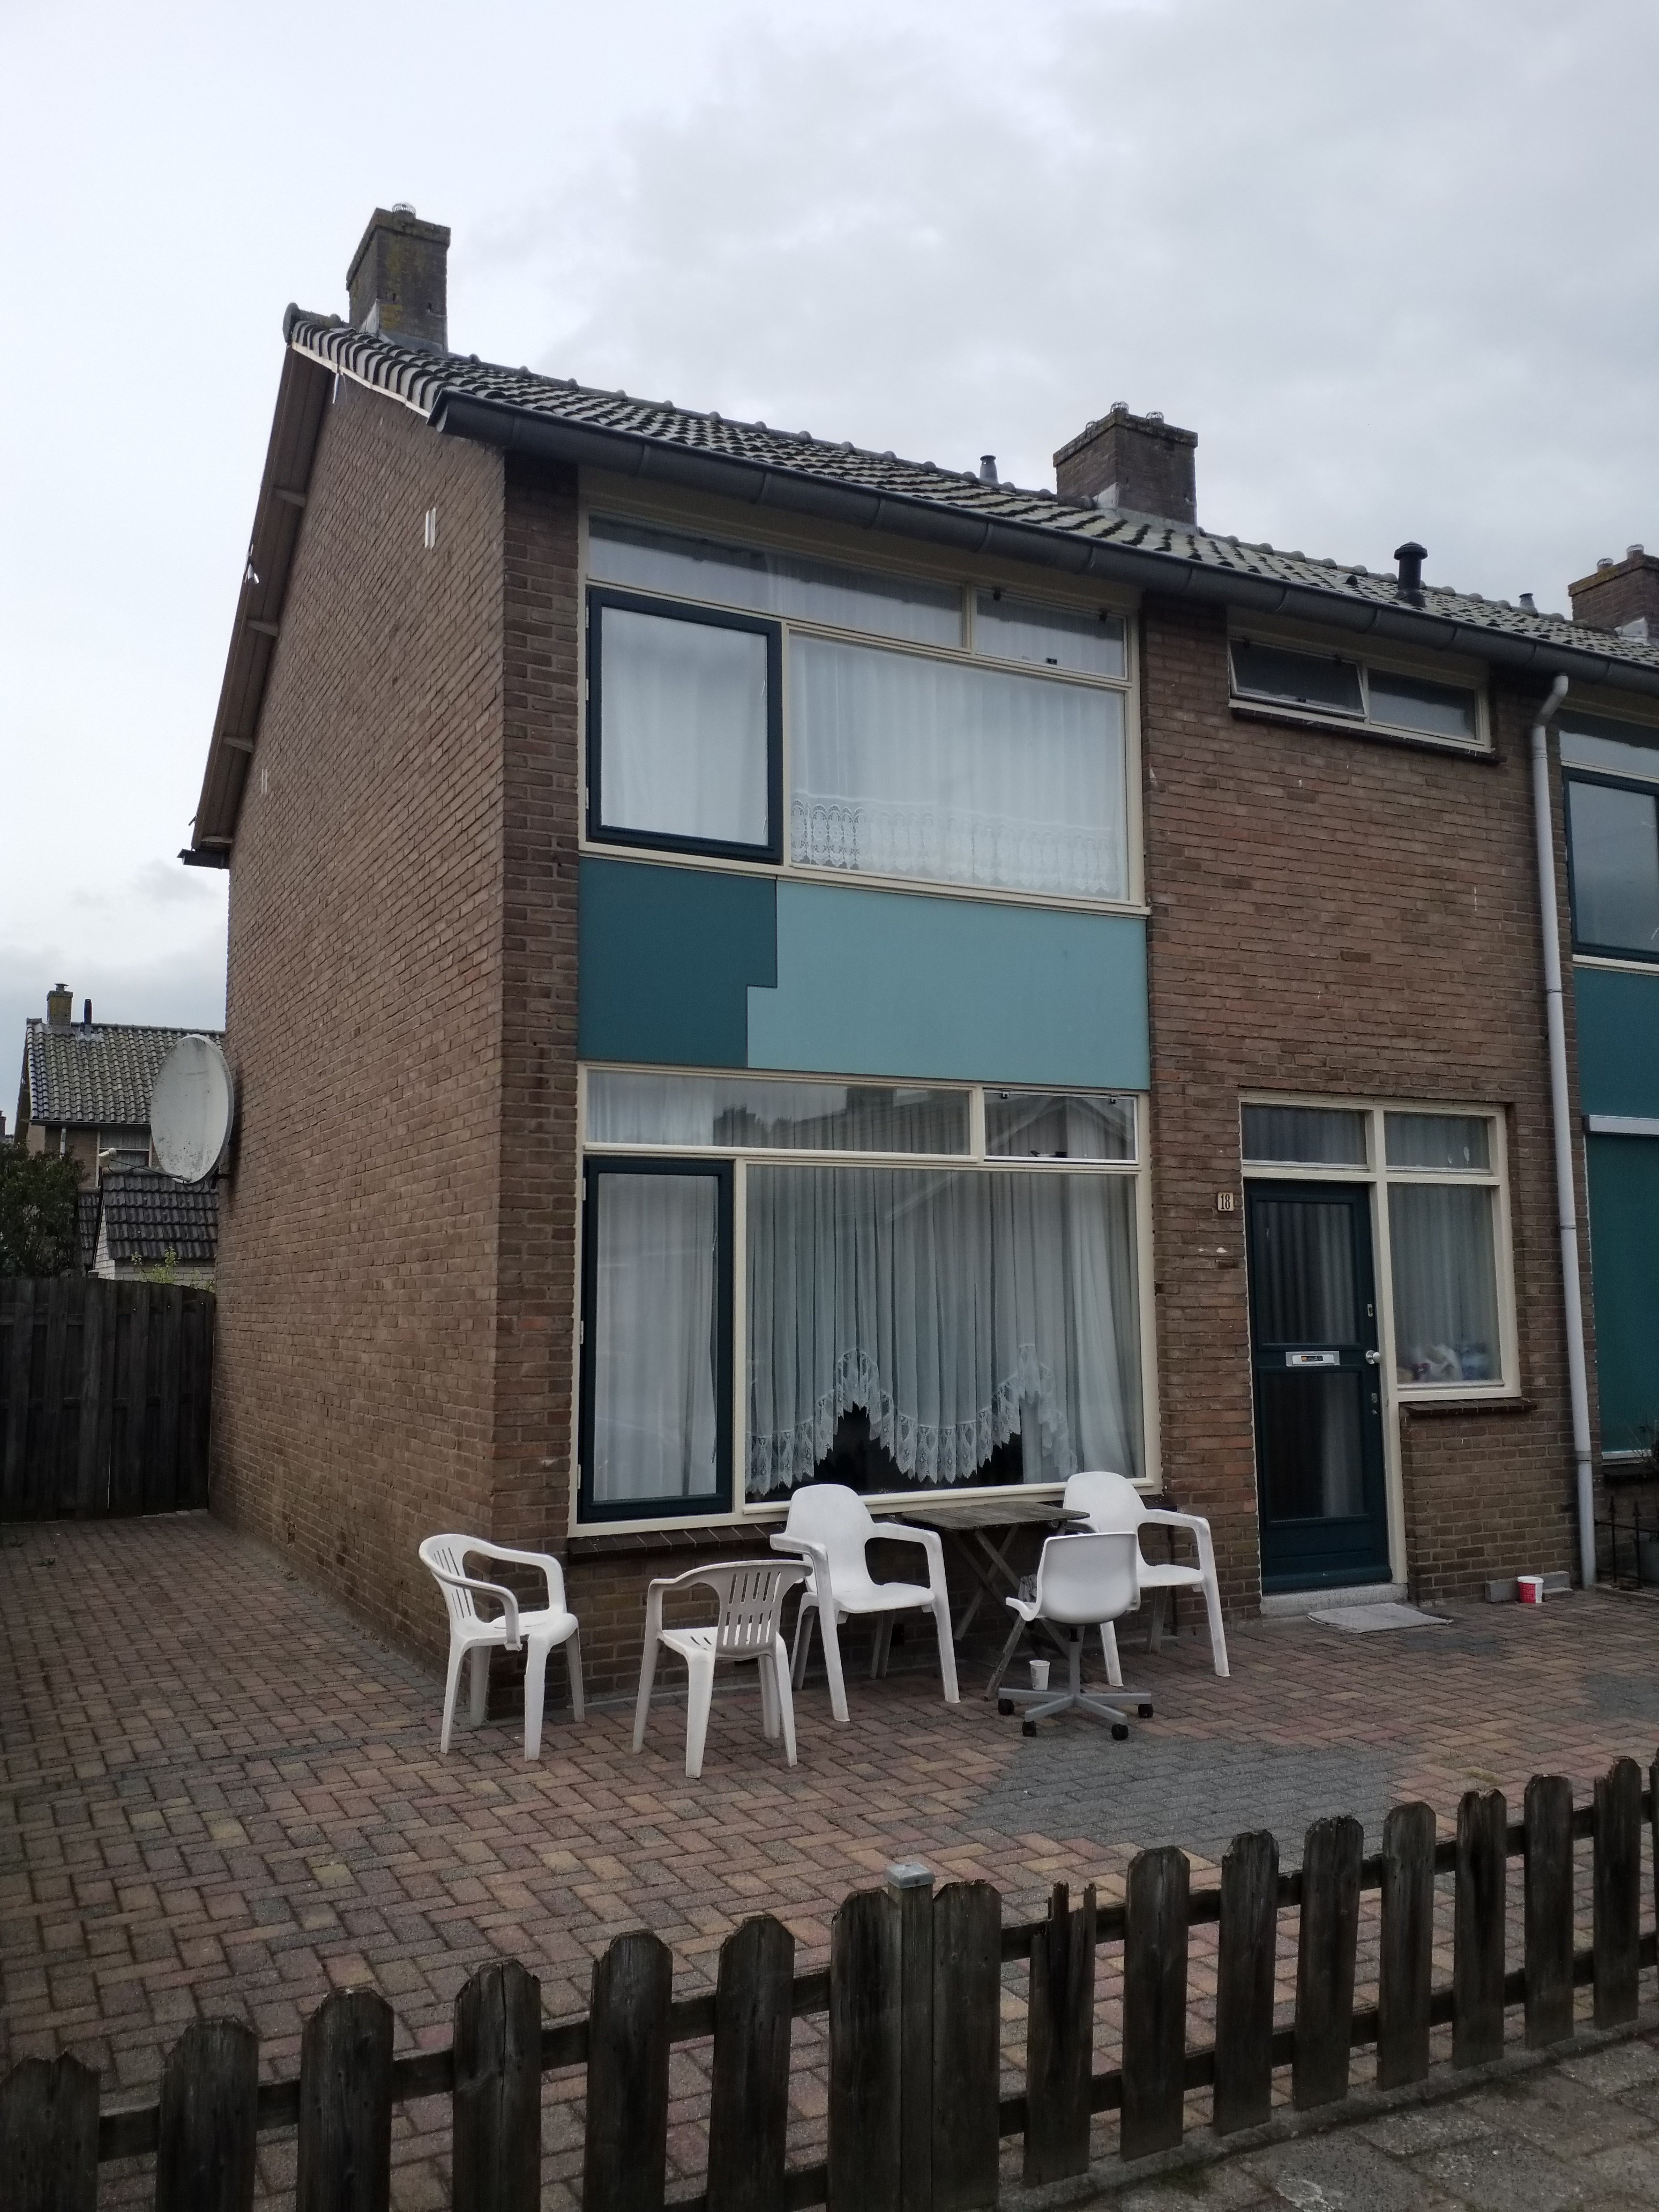 Justus van Effenstraat 18, 3842 GE Harderwijk, Nederland